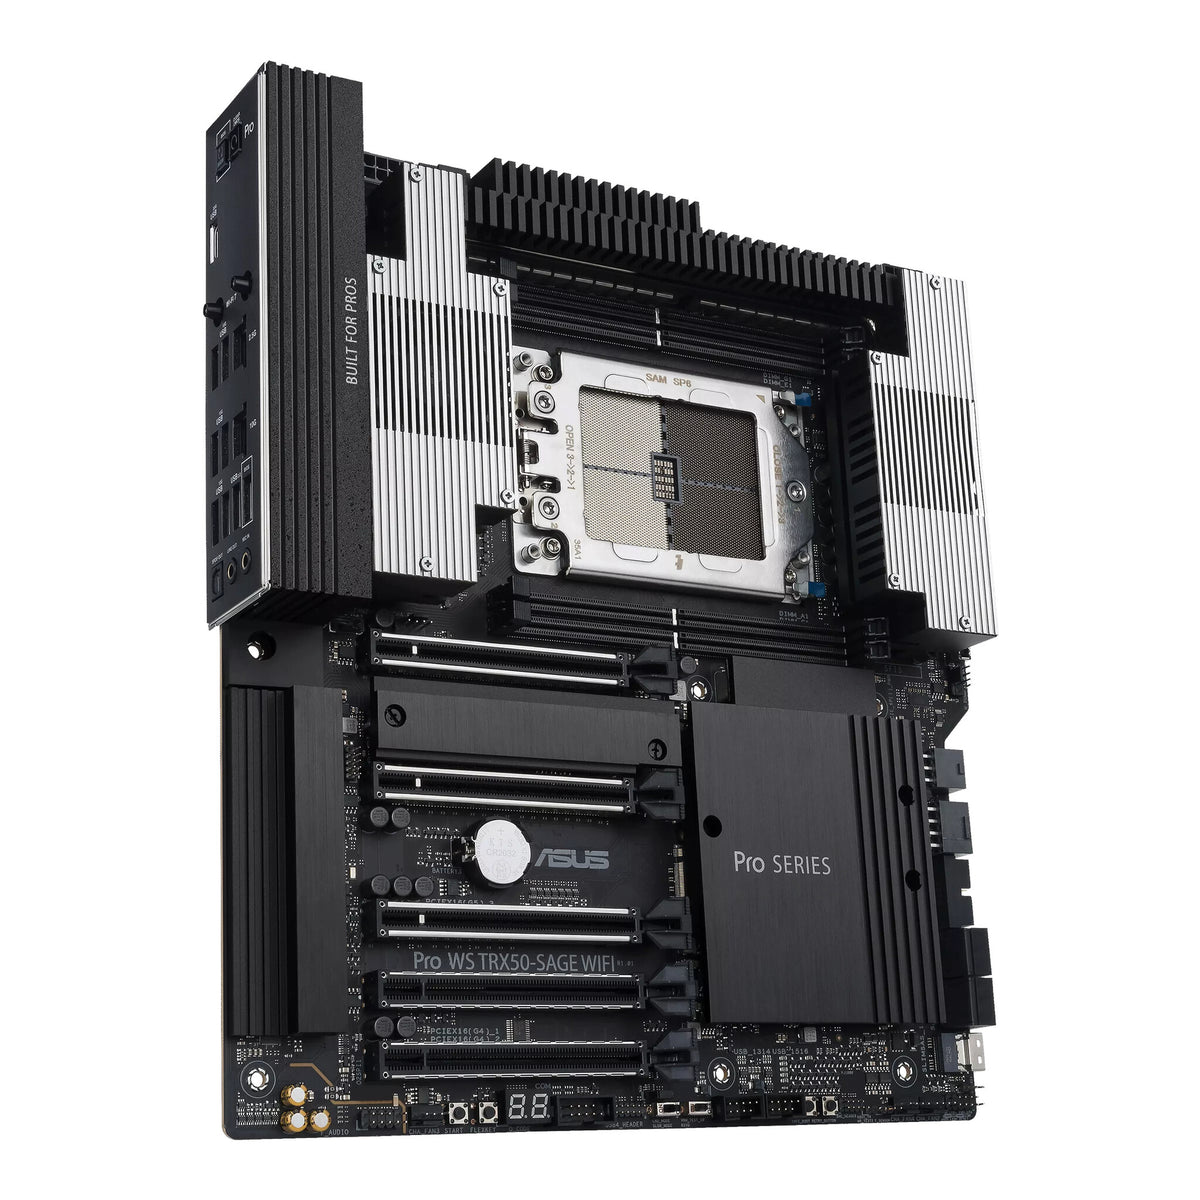 ASUS Pro WS TRX50-SAGE WIFI ATX motherboard - AMD TRX50 Socket sTR5